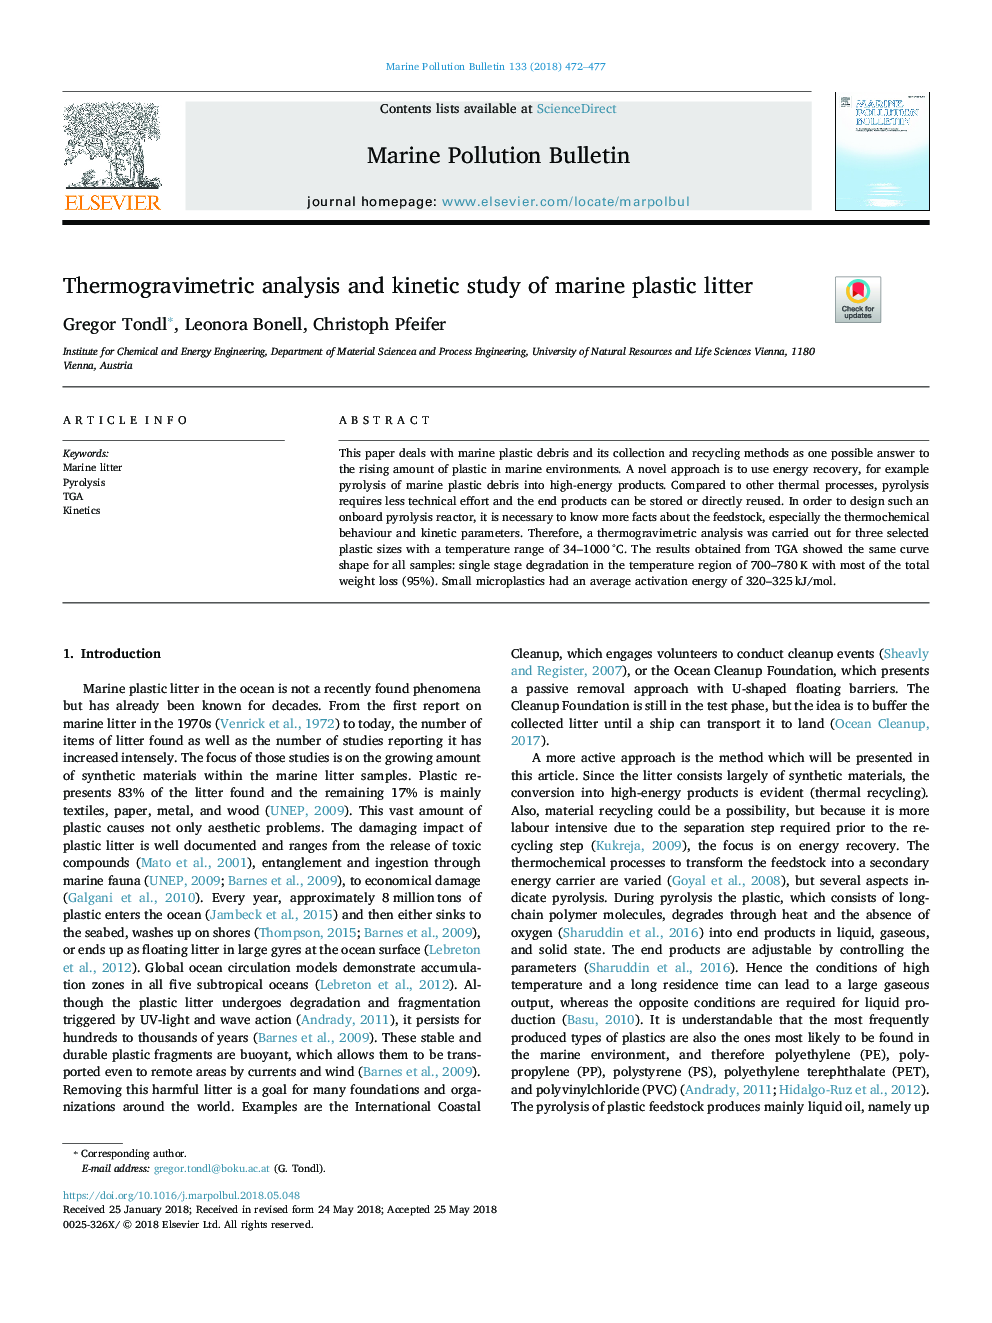 تجزیه و تحلیل ترموگرامتری و مطالعه جنبشی بستر پلاستیکی دریایی 